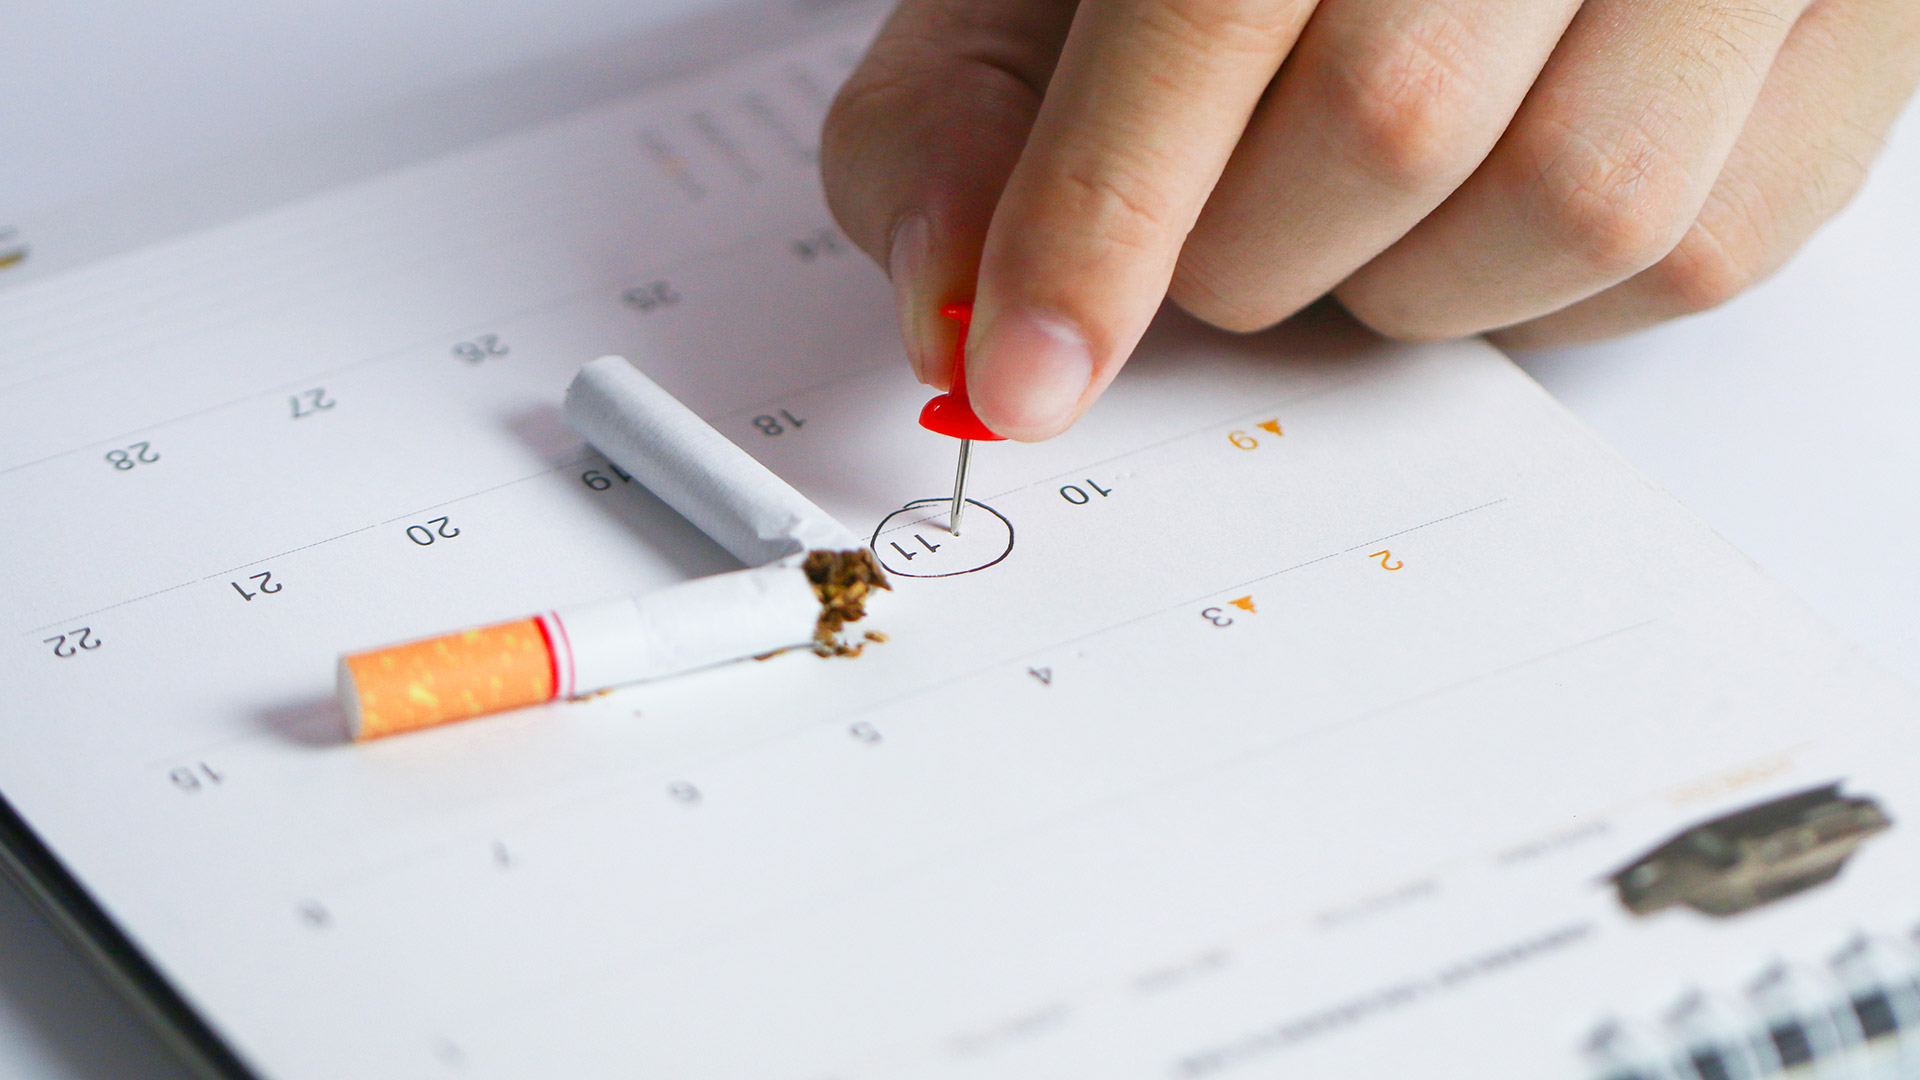 Nunca es tarde para abandonar el consumo del tabaco. Cuanto más temprano se haga, menores serán las probabilidades de desarrollar cáncer y otras enfermedades (Getty Images)

